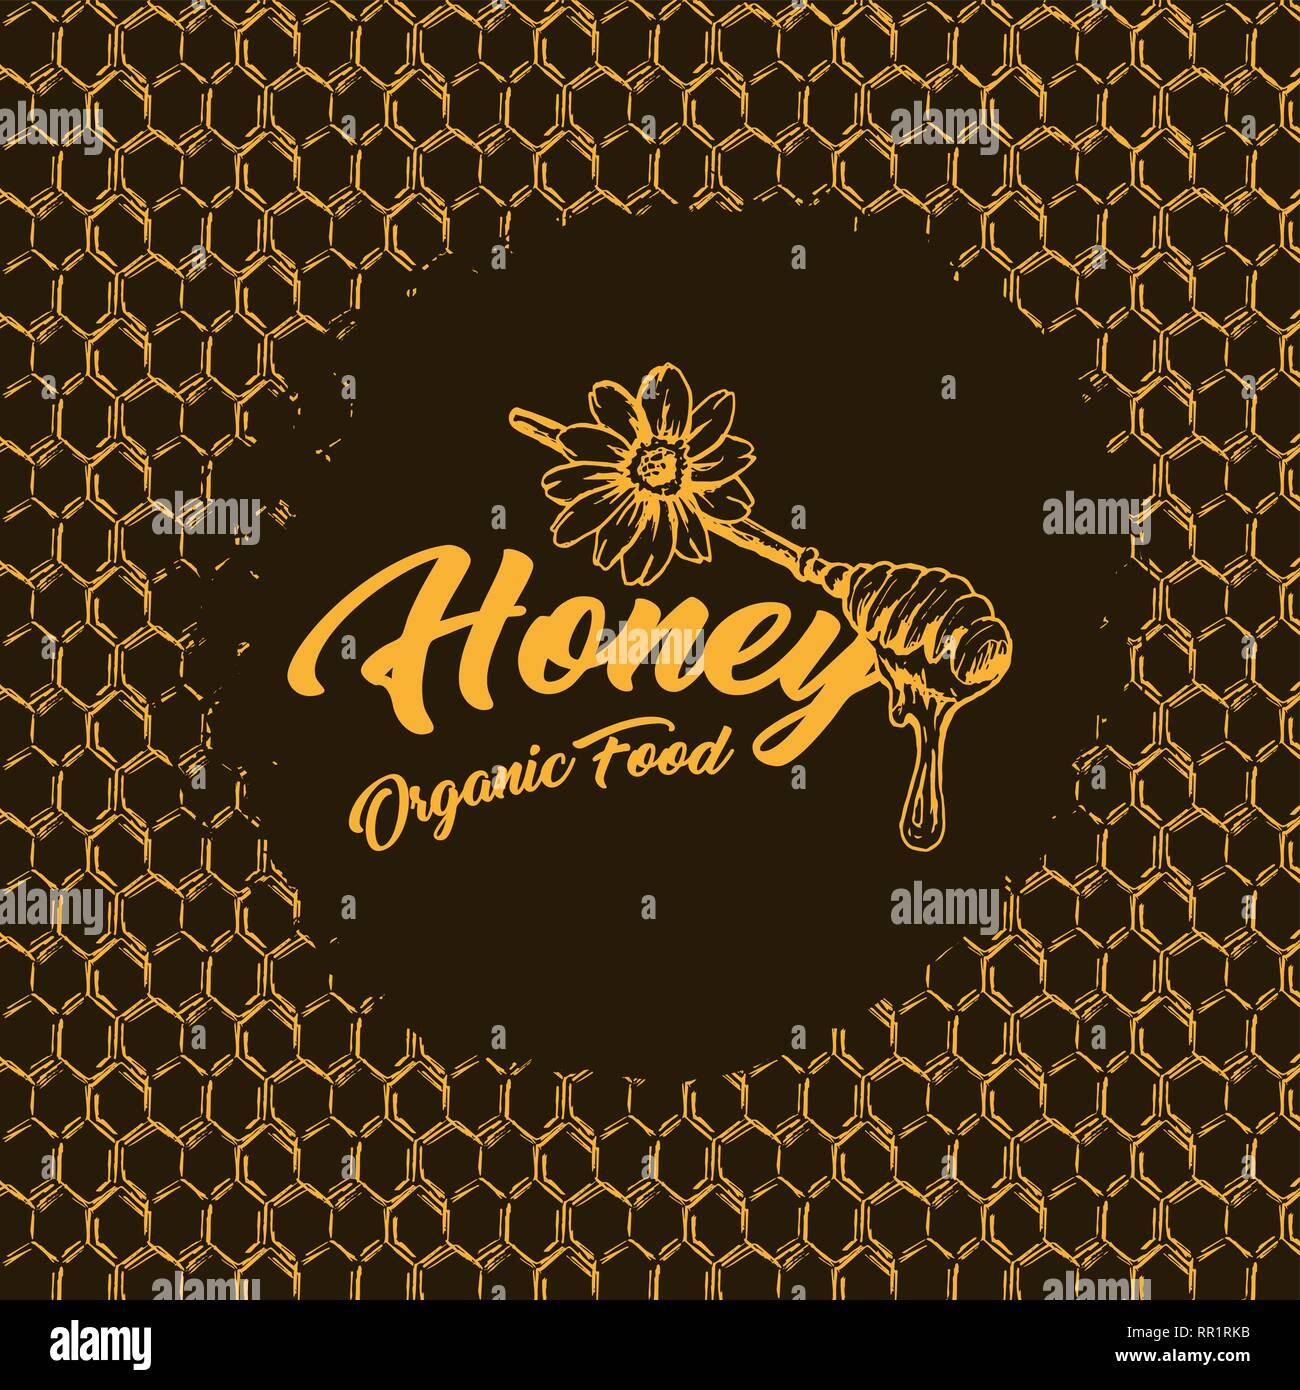 Miel de abejas, Sketch de logotipo con de nido de abeja. Vintage dibujado a mano ilustración aislada con letras hechas a mano. Fondo oscuro y amarillo o naranja contorno